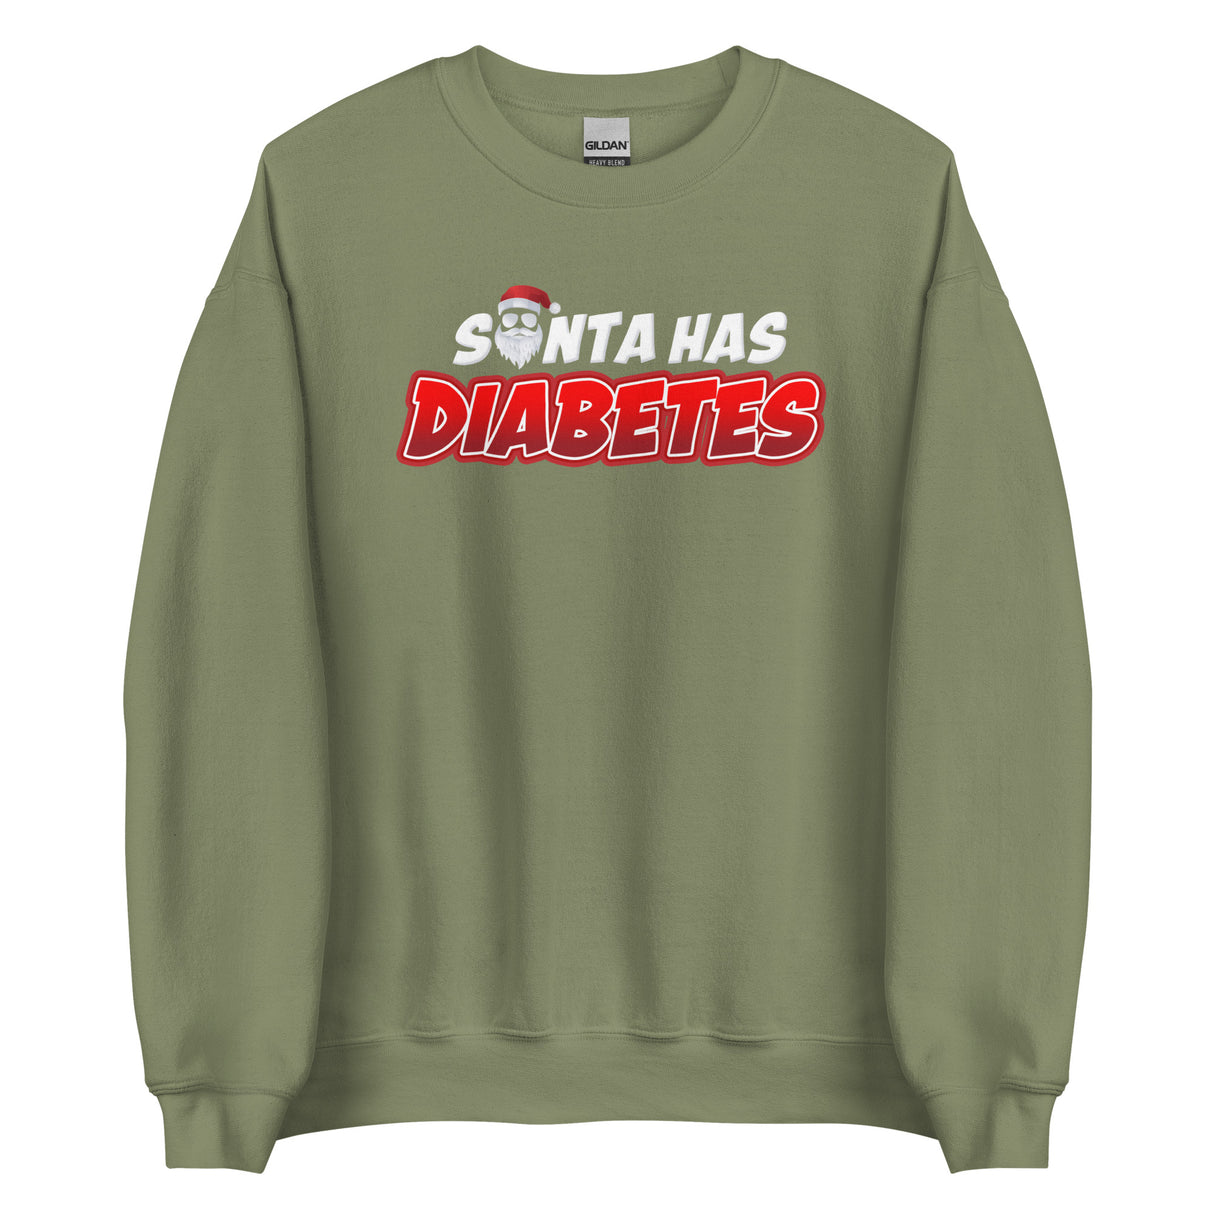 Santa Has Diabetes Sweatshirt